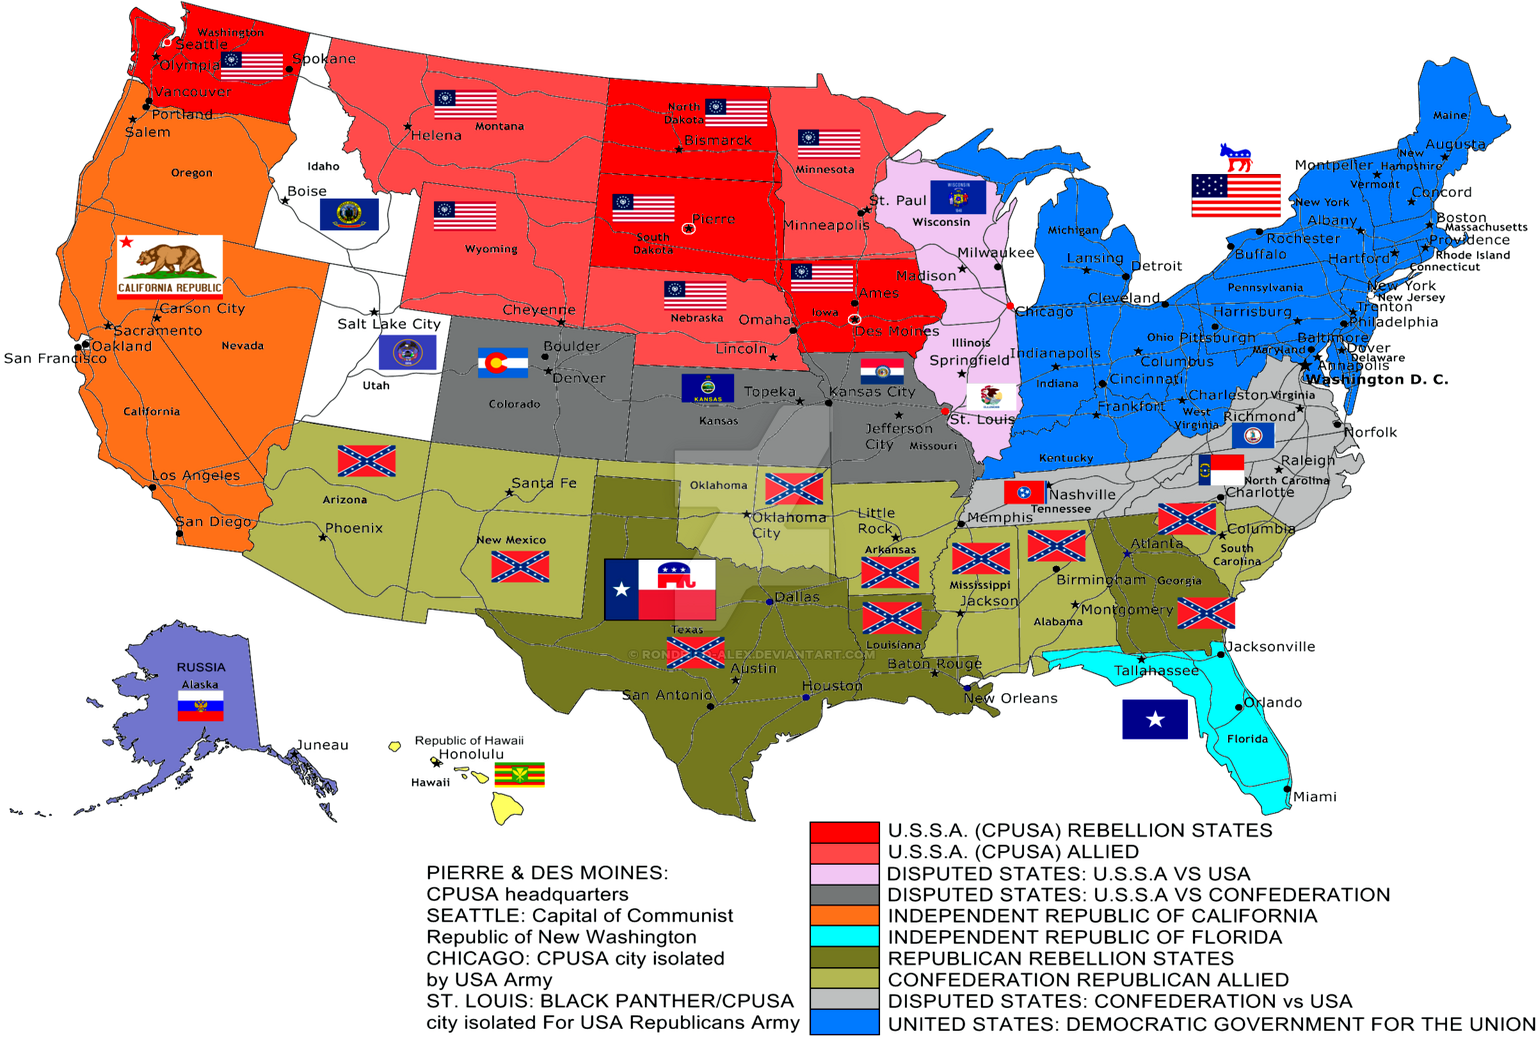 Реферат: Политическая эволюция южных штатов в период Реконструкции